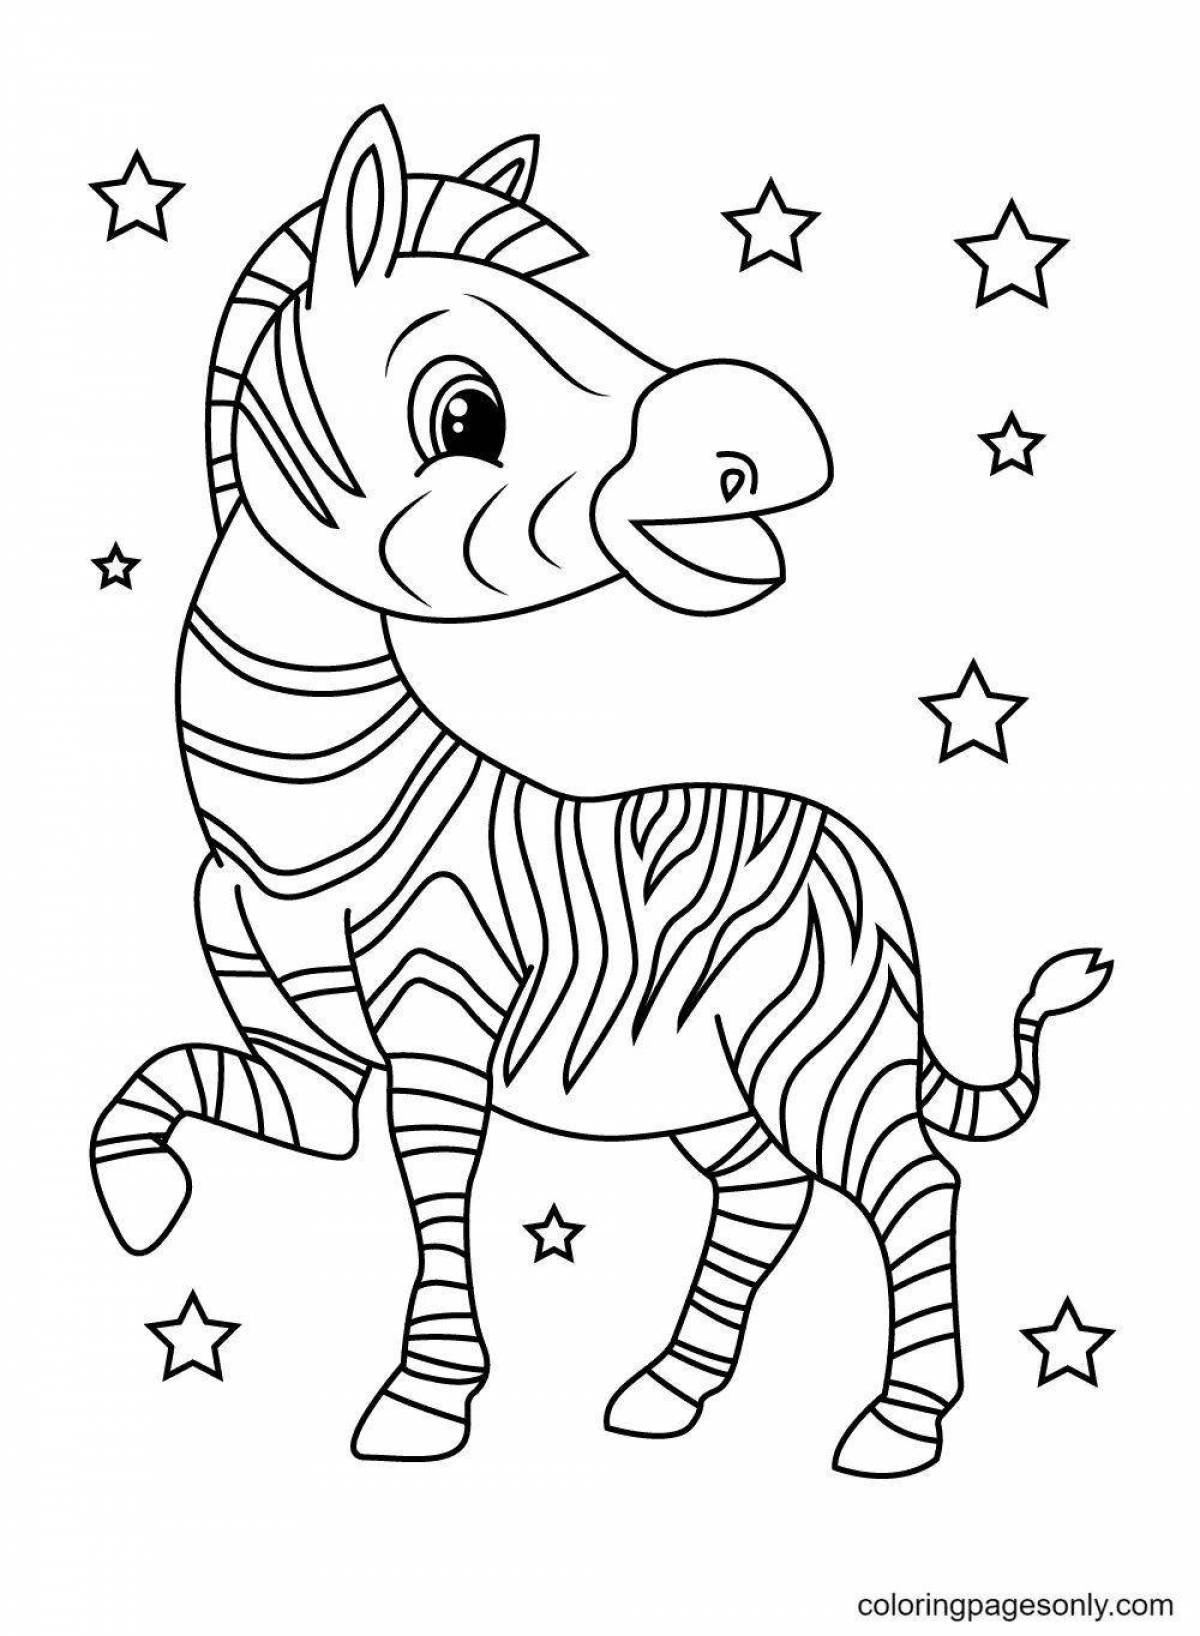 Cute zebra coloring book for kids